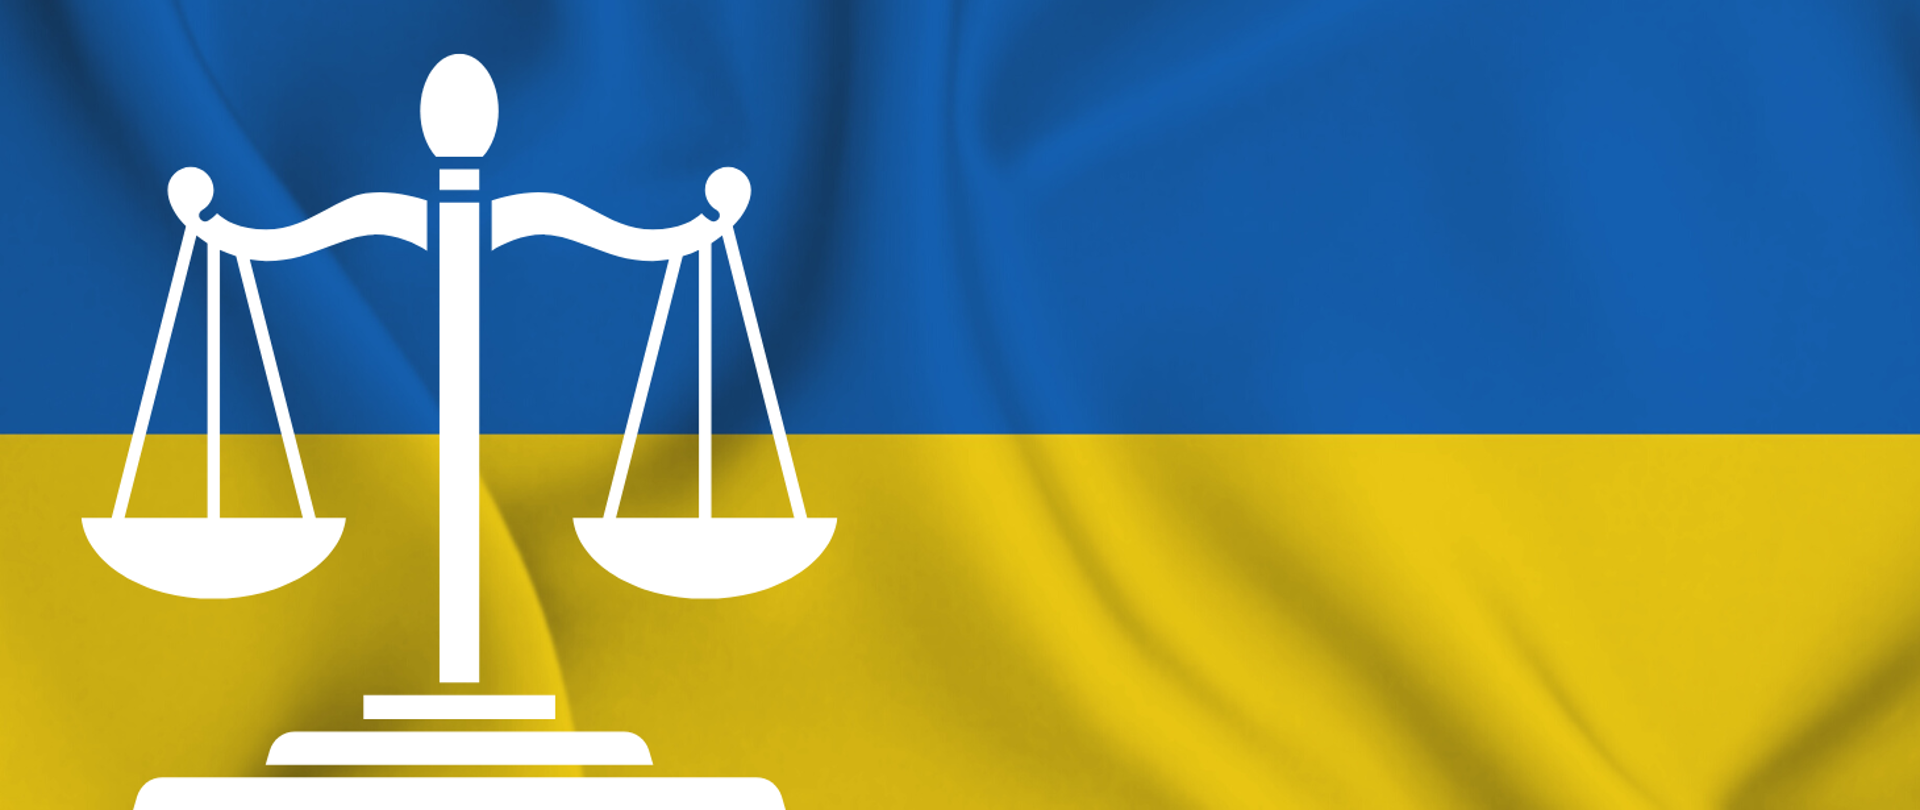 Grafika ozdobna, flaga Ukrainy z piktogramem wagi